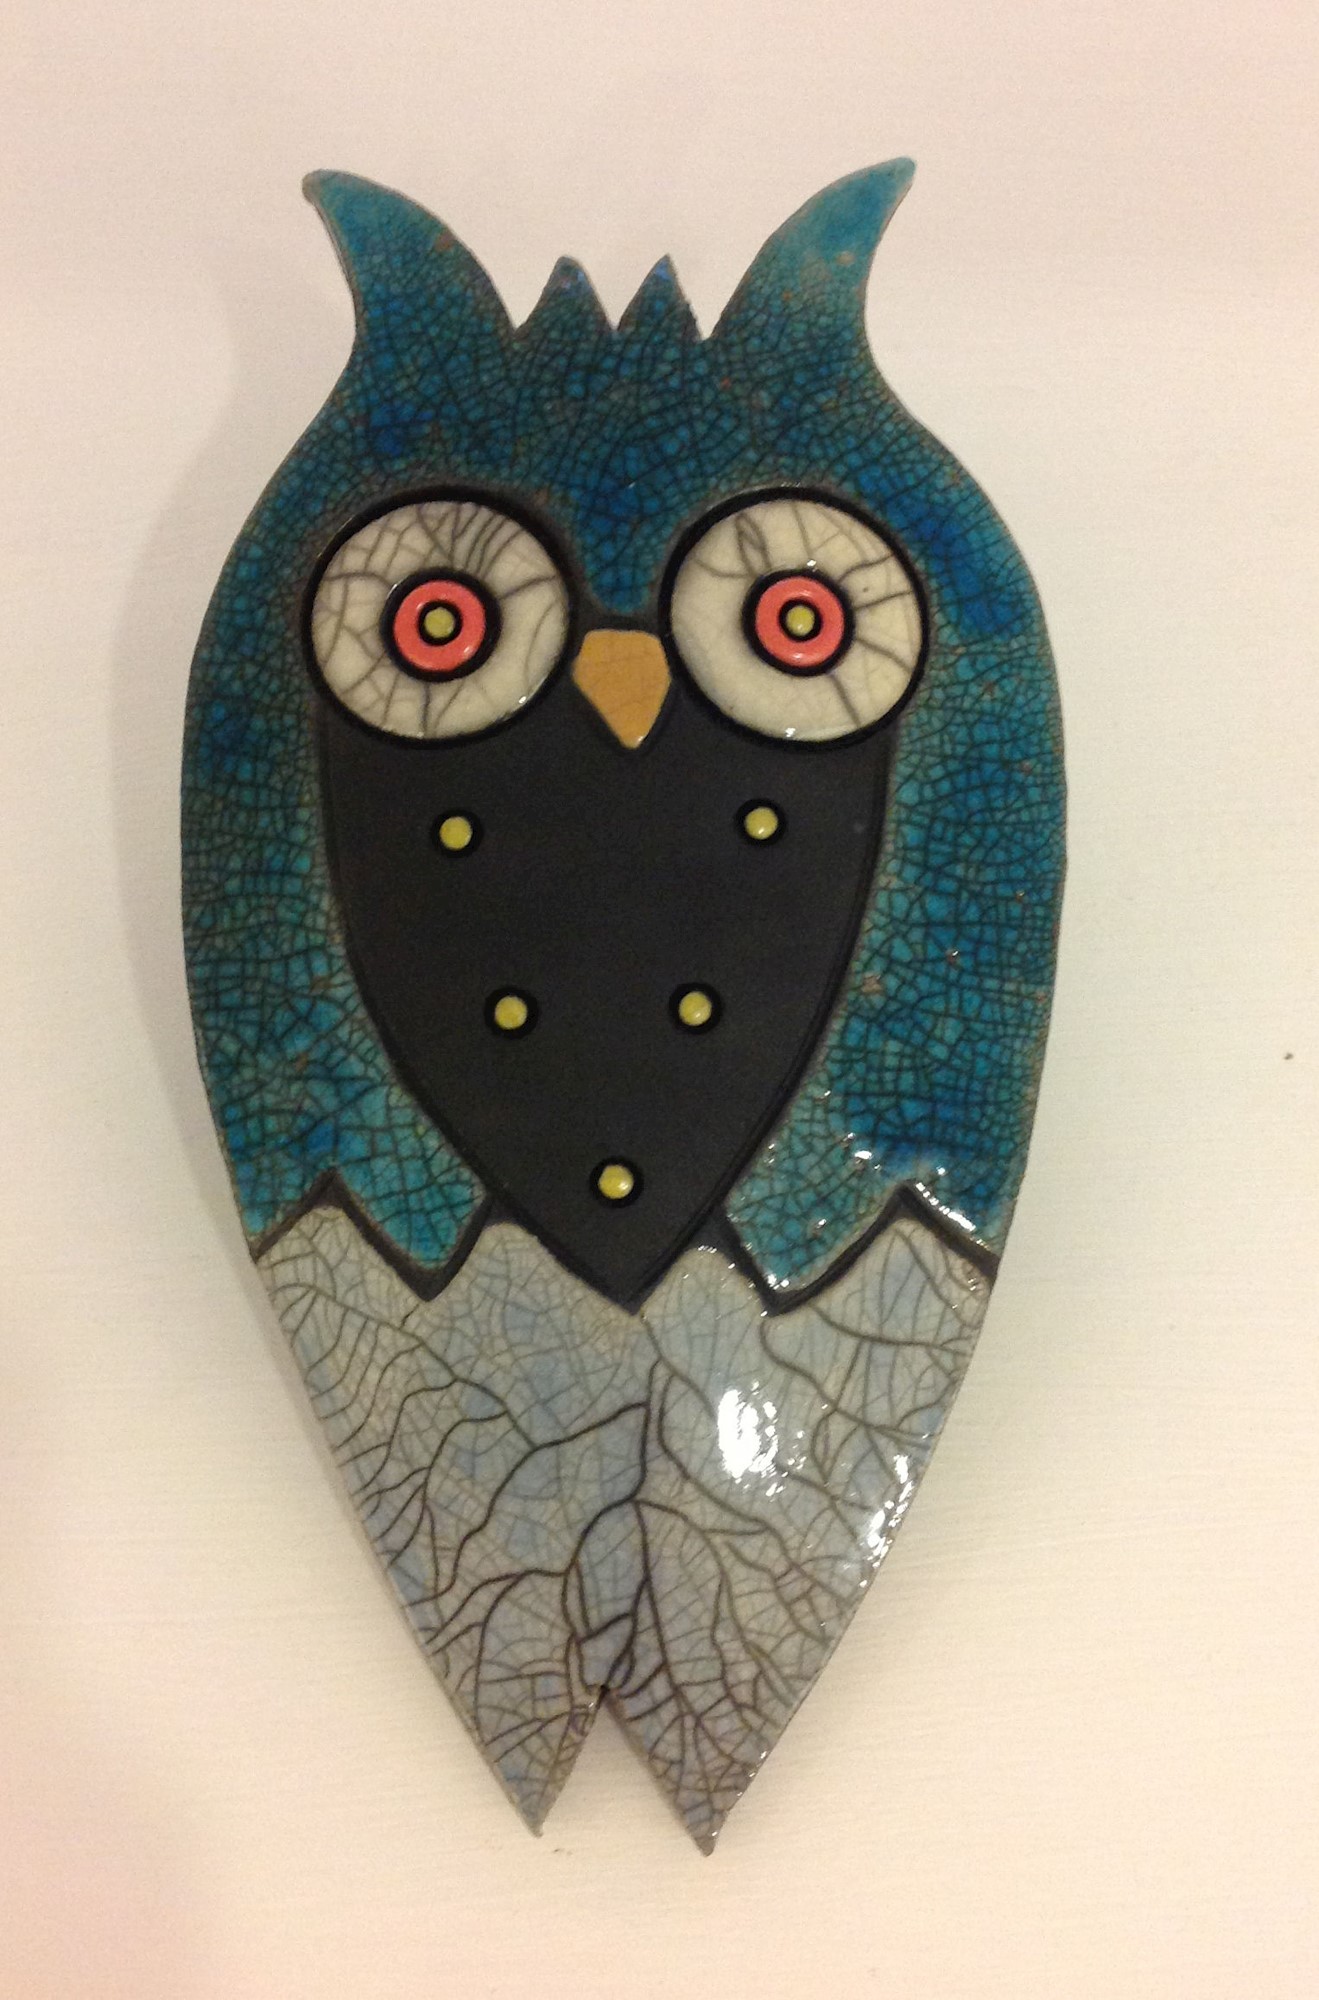 'Owl Large II' by artist Julian Smith